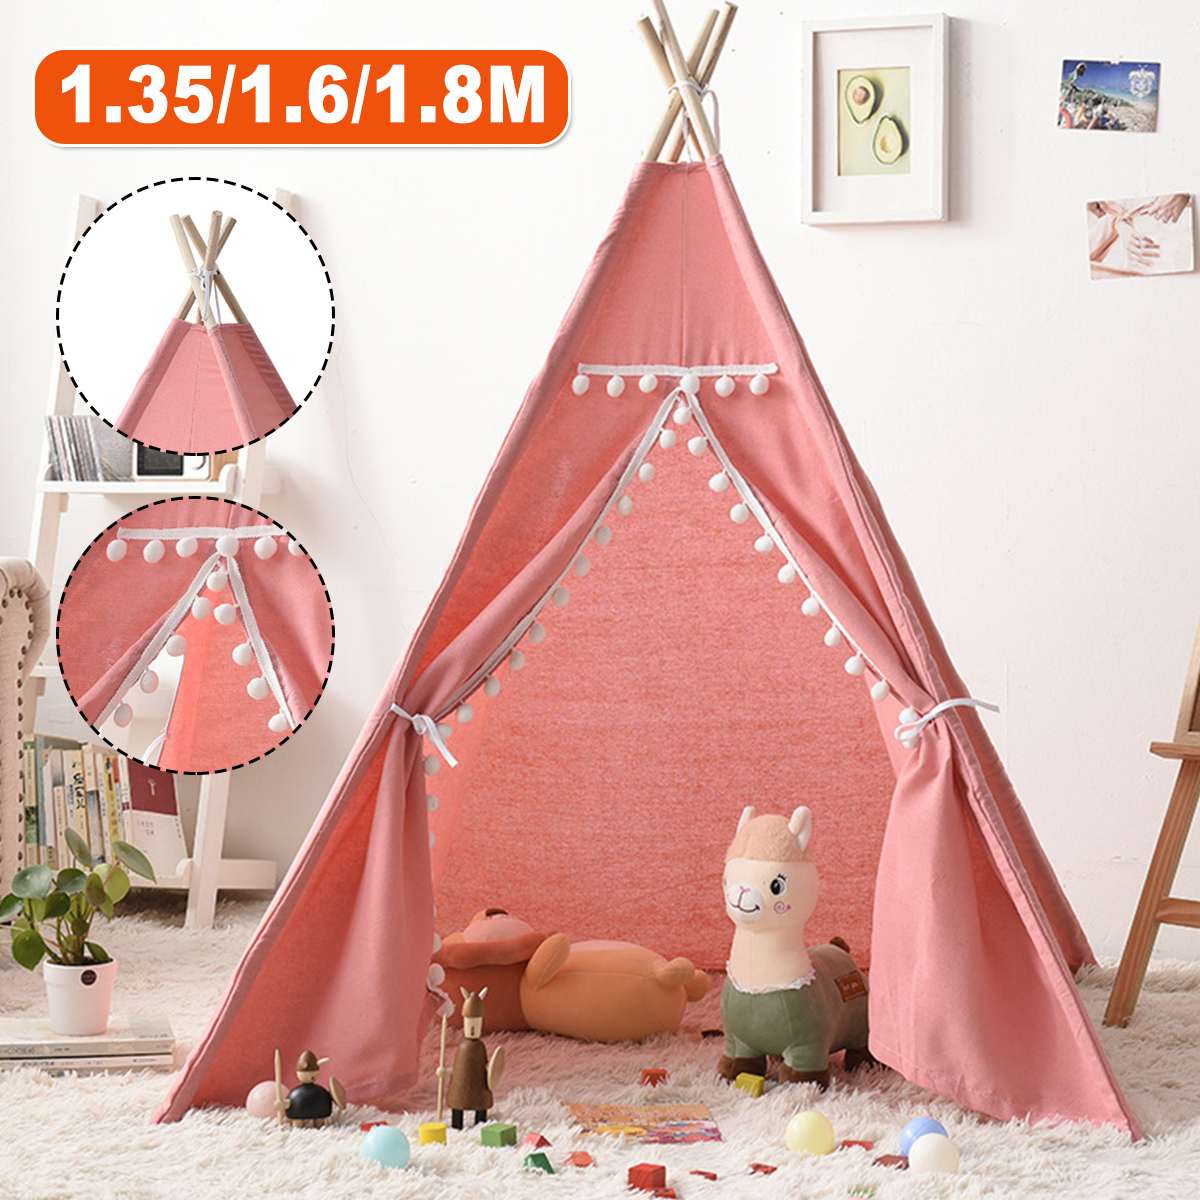 Tente-pour-enfants-de-1-35-1-8m-Tipi-Portable-maison-de-jeu-Tipi-tentes-de